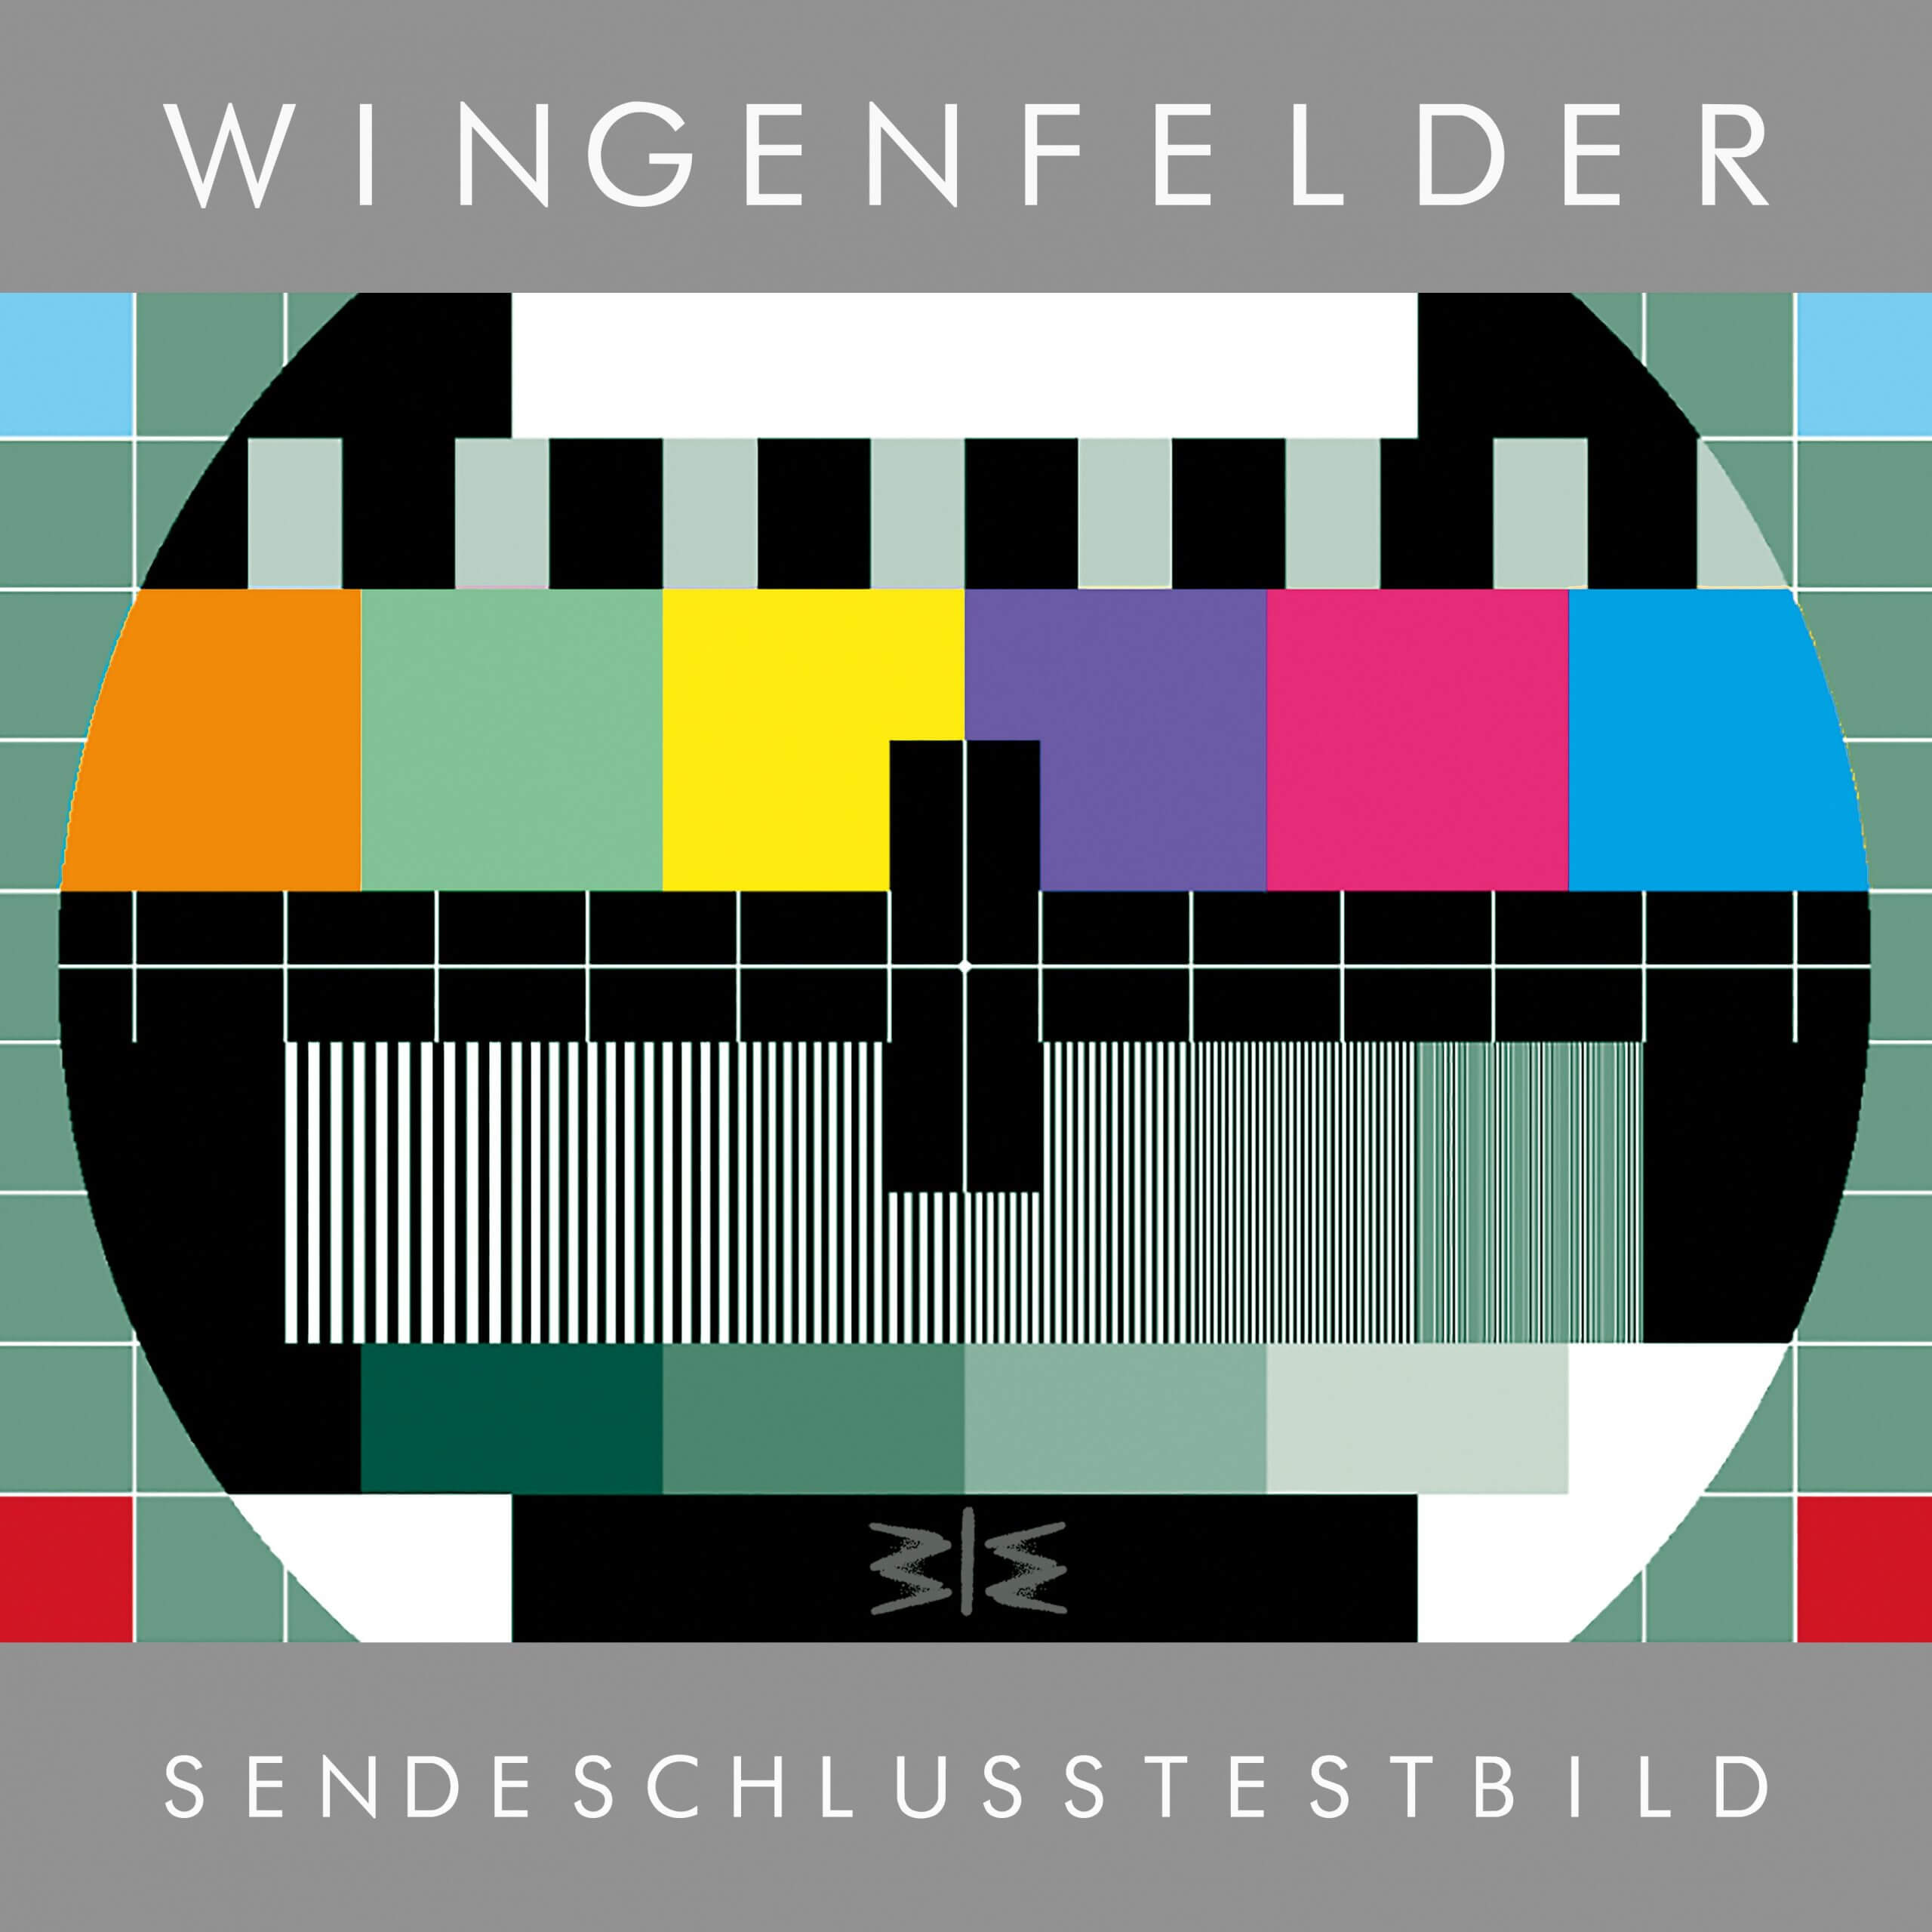 Wingenfelder – “SendeschlussTestbild“ (Starwatch Entertainment/Sony Music) 